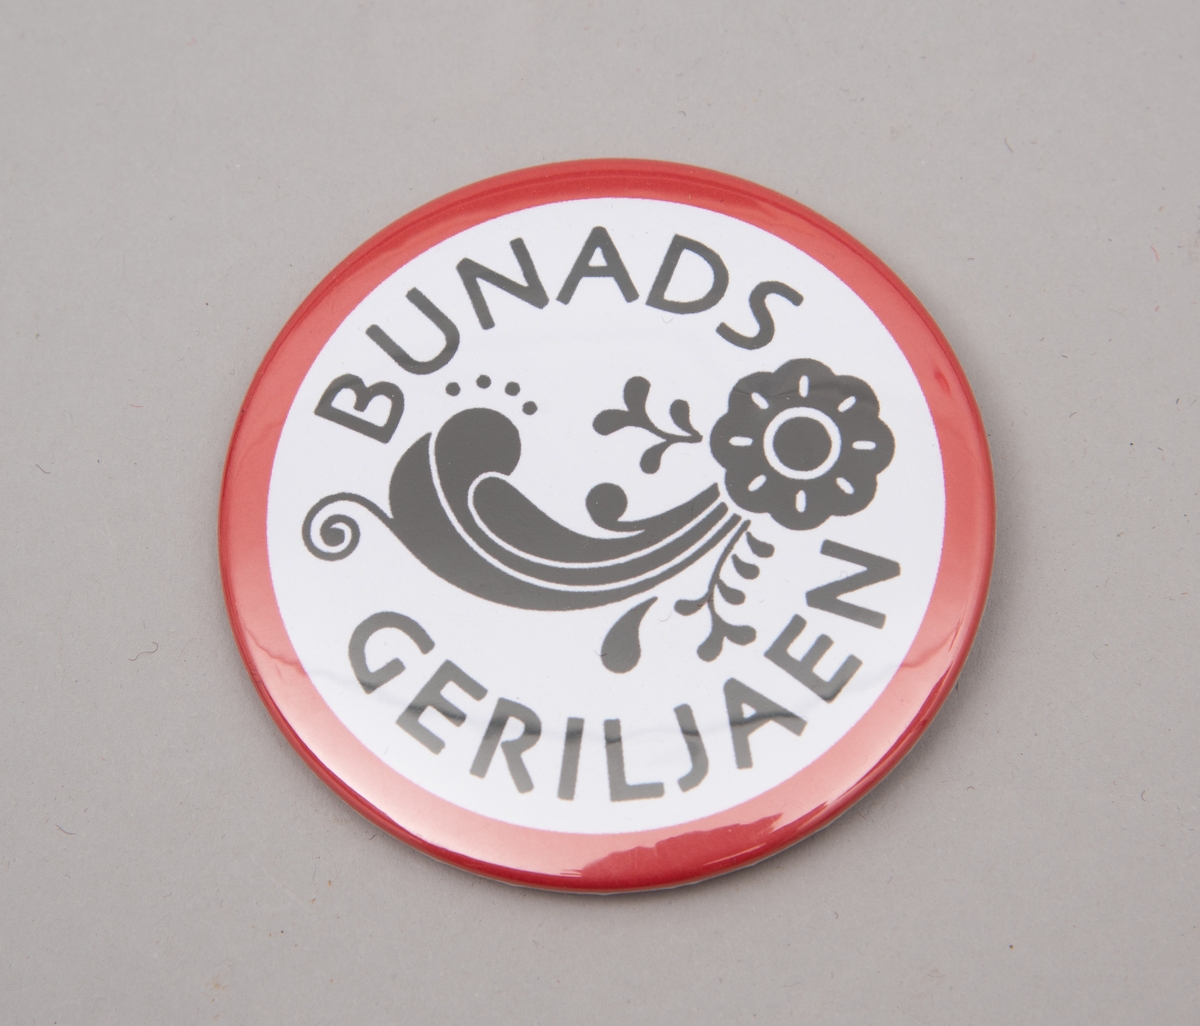 Buttons med påskrift "Bunadsgeriljaen" og logo-motiv i rødt, hvitt og sort.